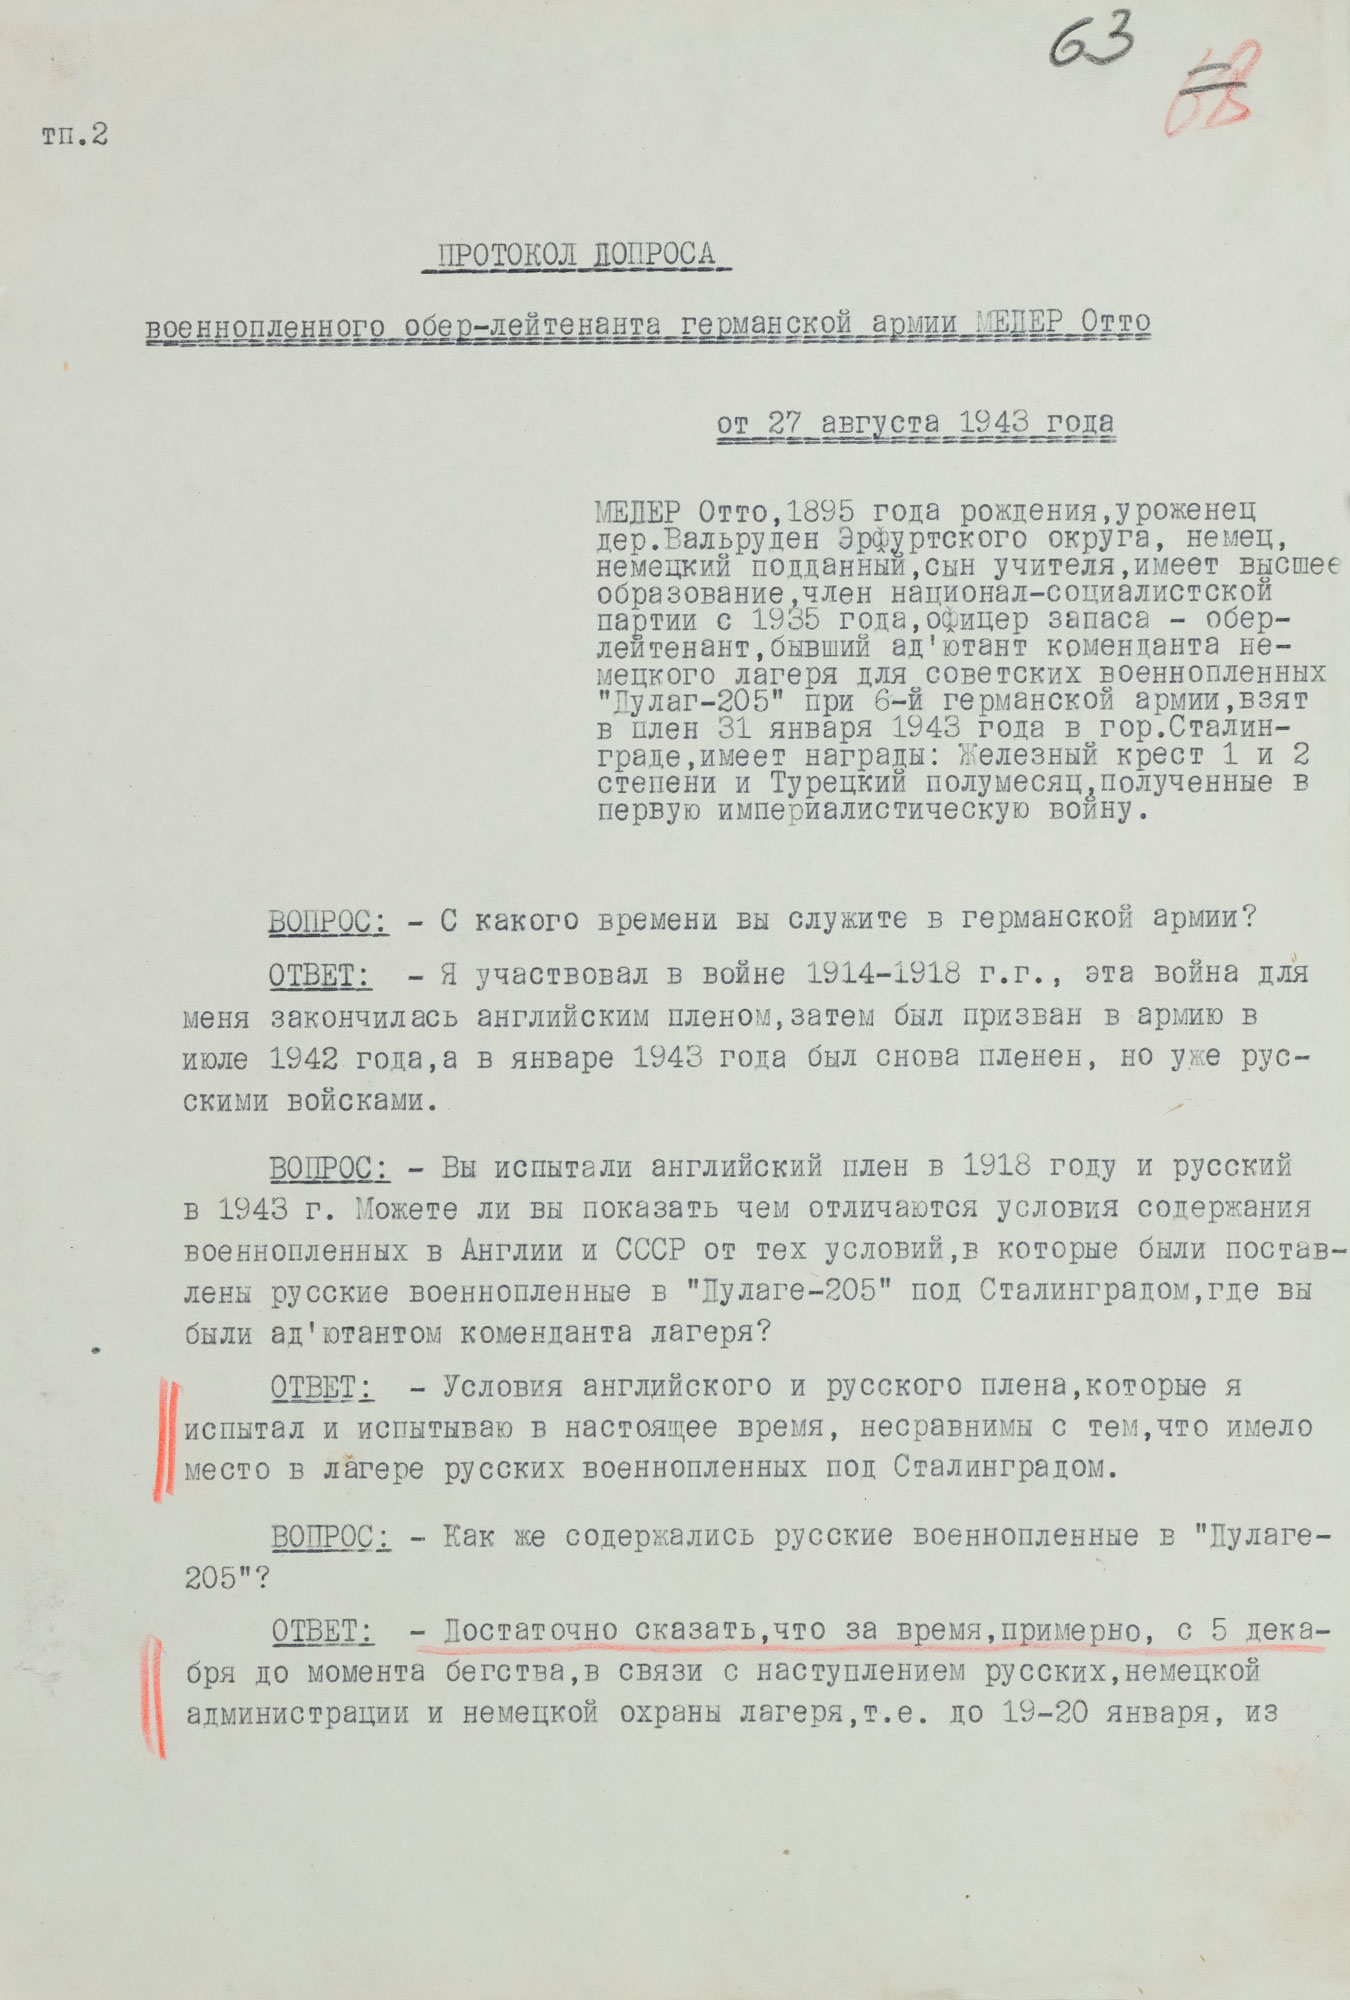 Протокол допроса военнопленного обер-лейтенанта германской армии МЕДЕРА Отто, адъютанта коменданта «Дулаг-205». 27 августа 1943 г. Страница 1